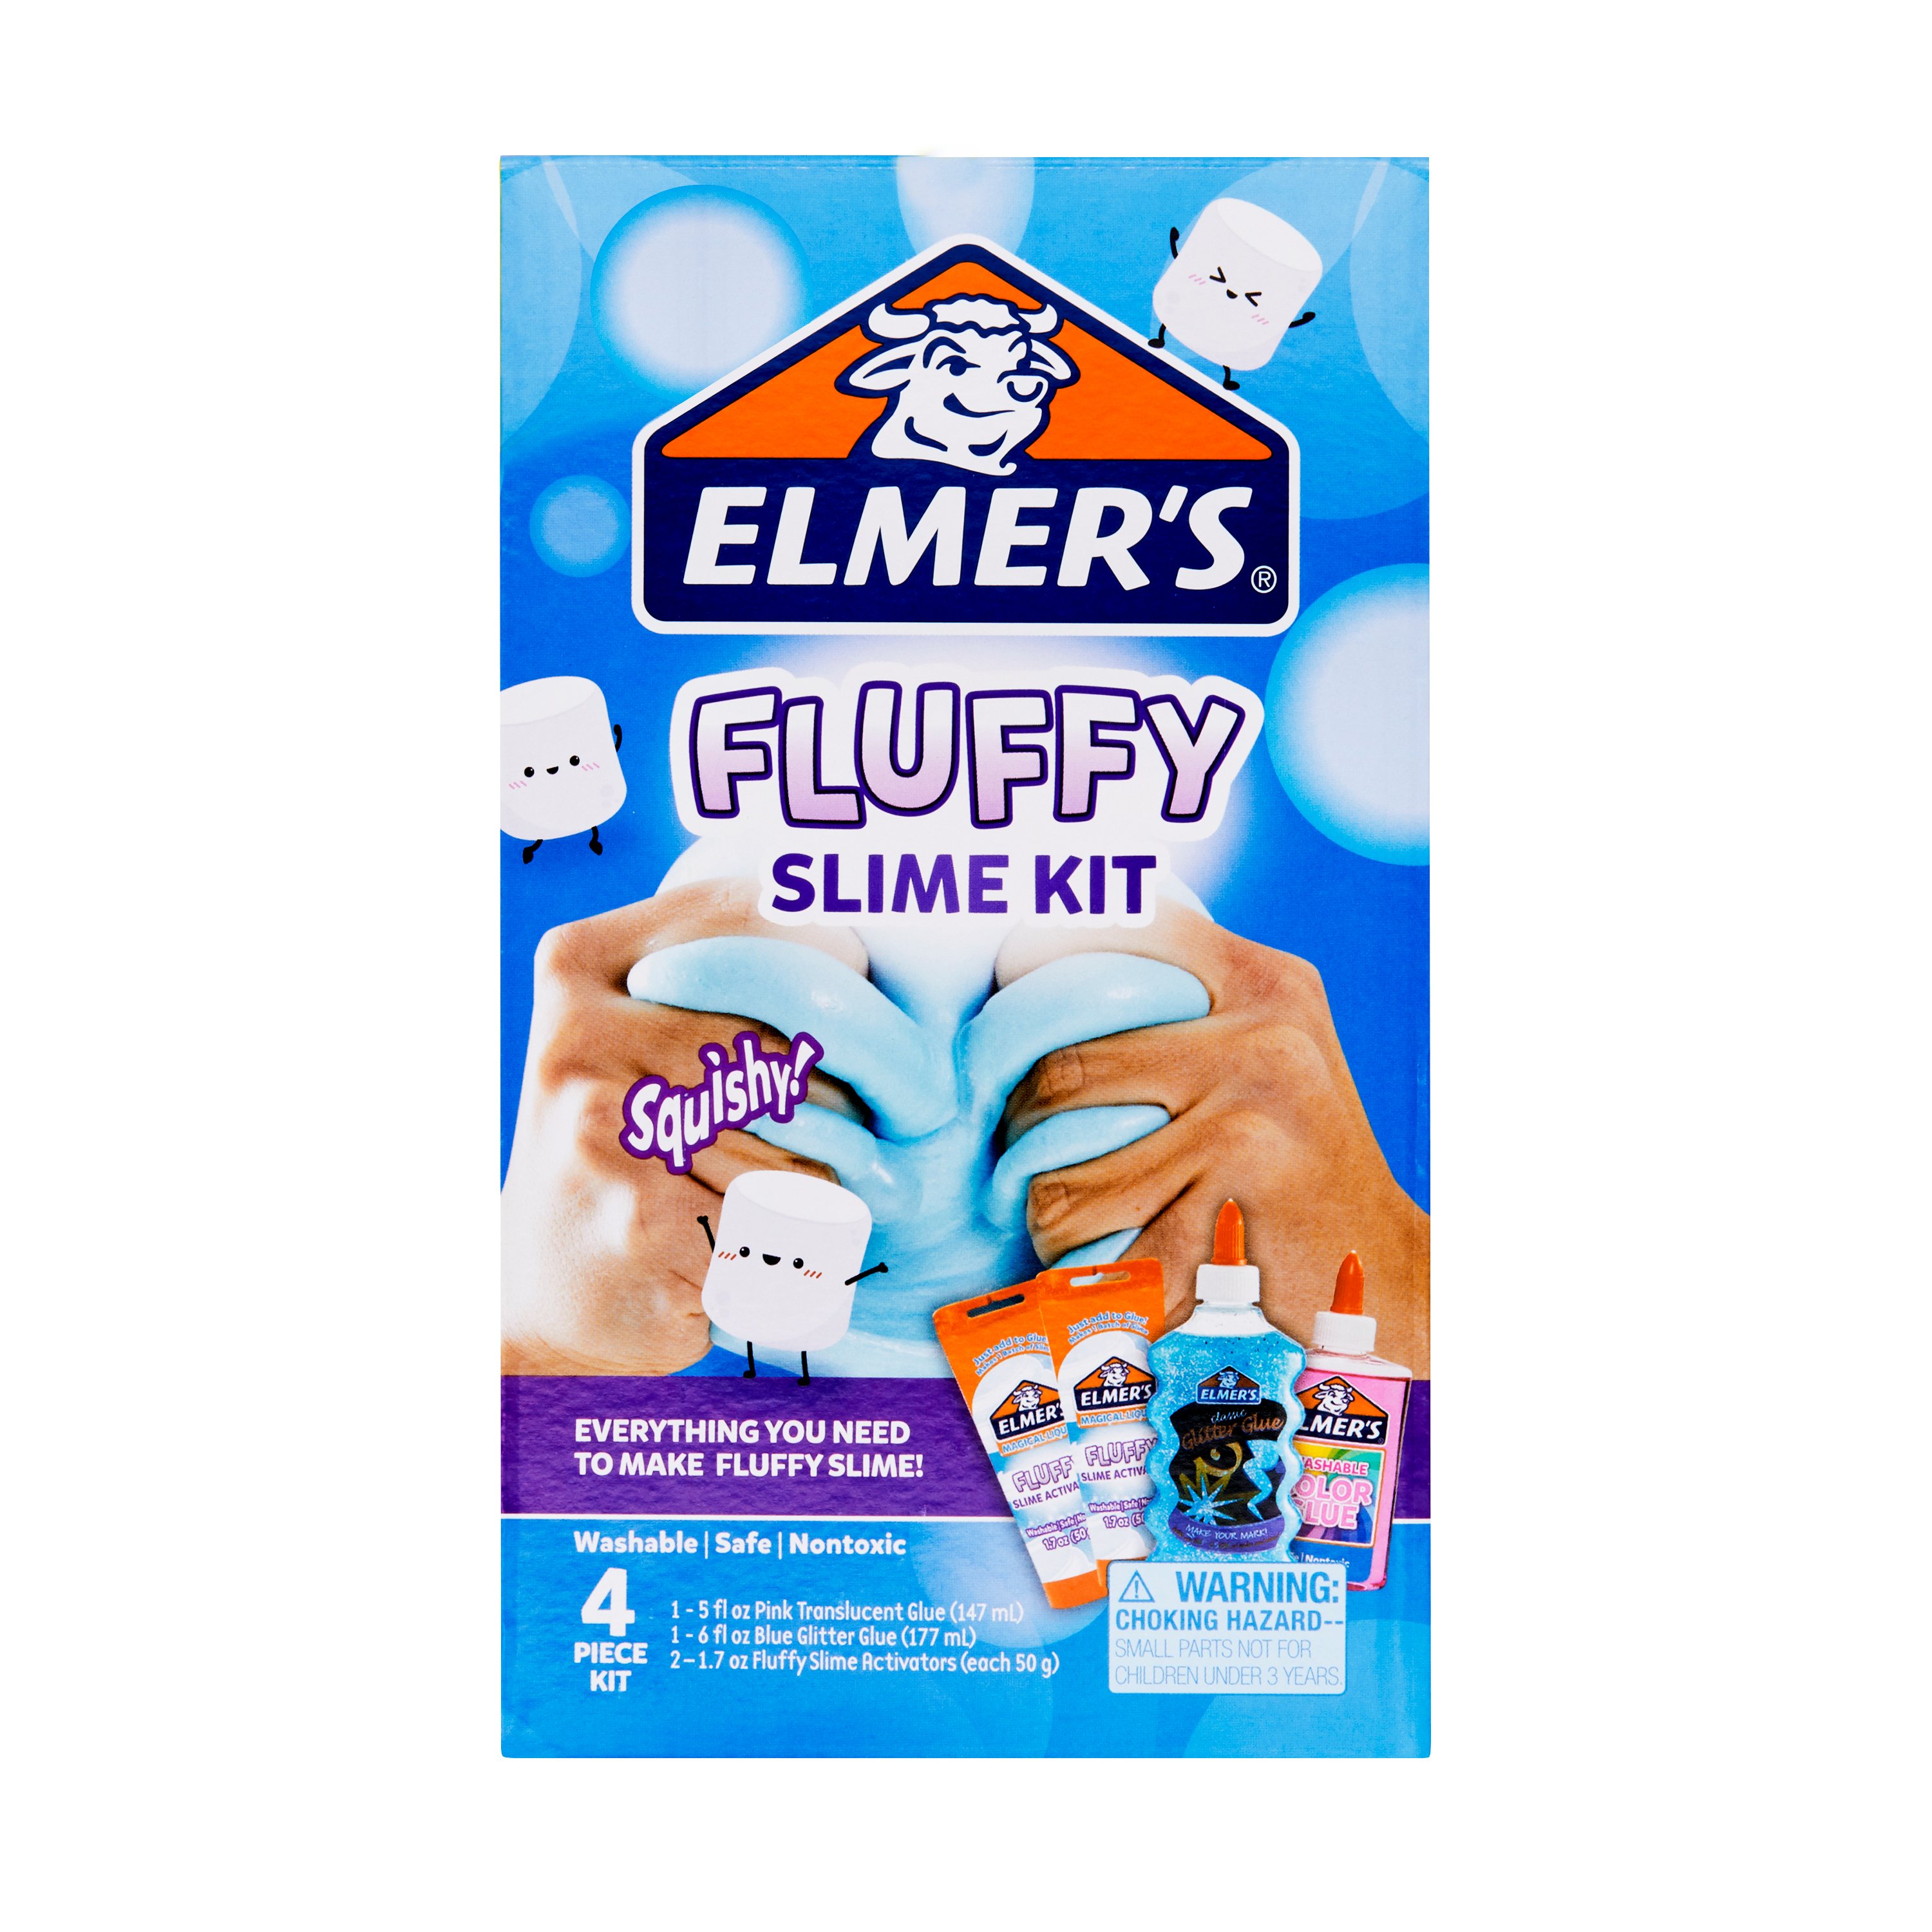 Elmer's Fluffy Slime Kit each